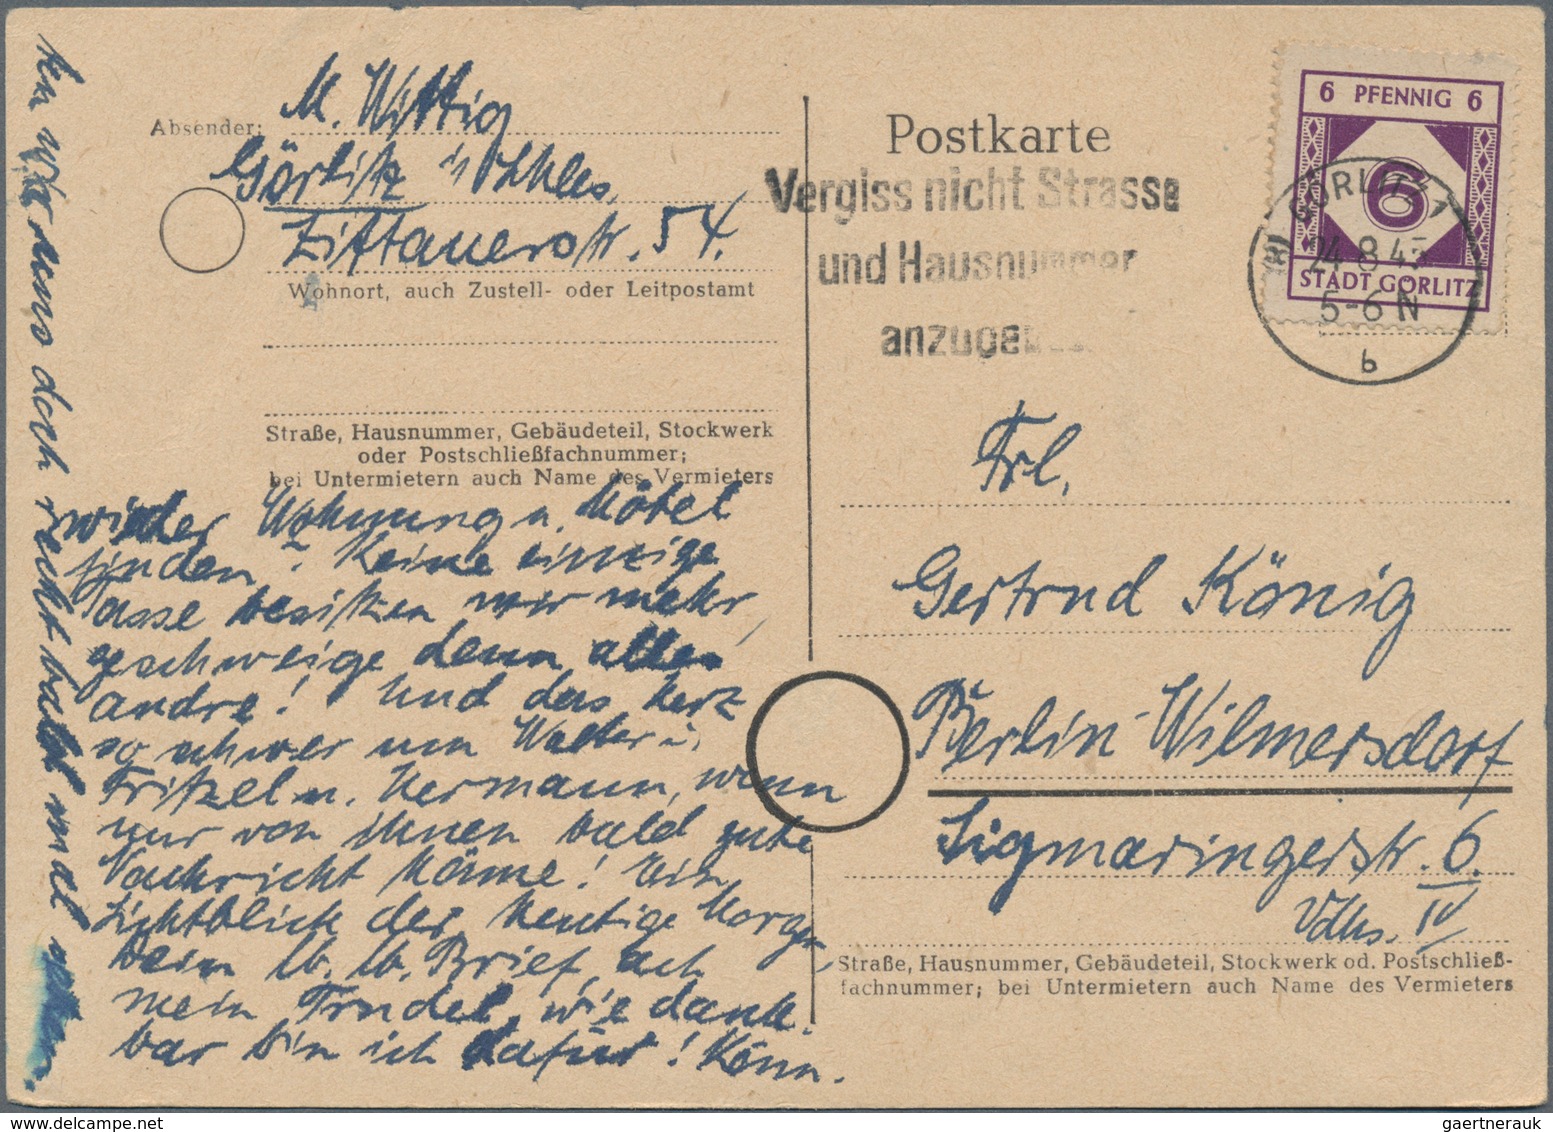 Deutsche Lokalausgaben ab 1945: GÖRLITZ: 1945/1948, Partie von zehn Bedarfs-Briefen/Karten, dabei ei